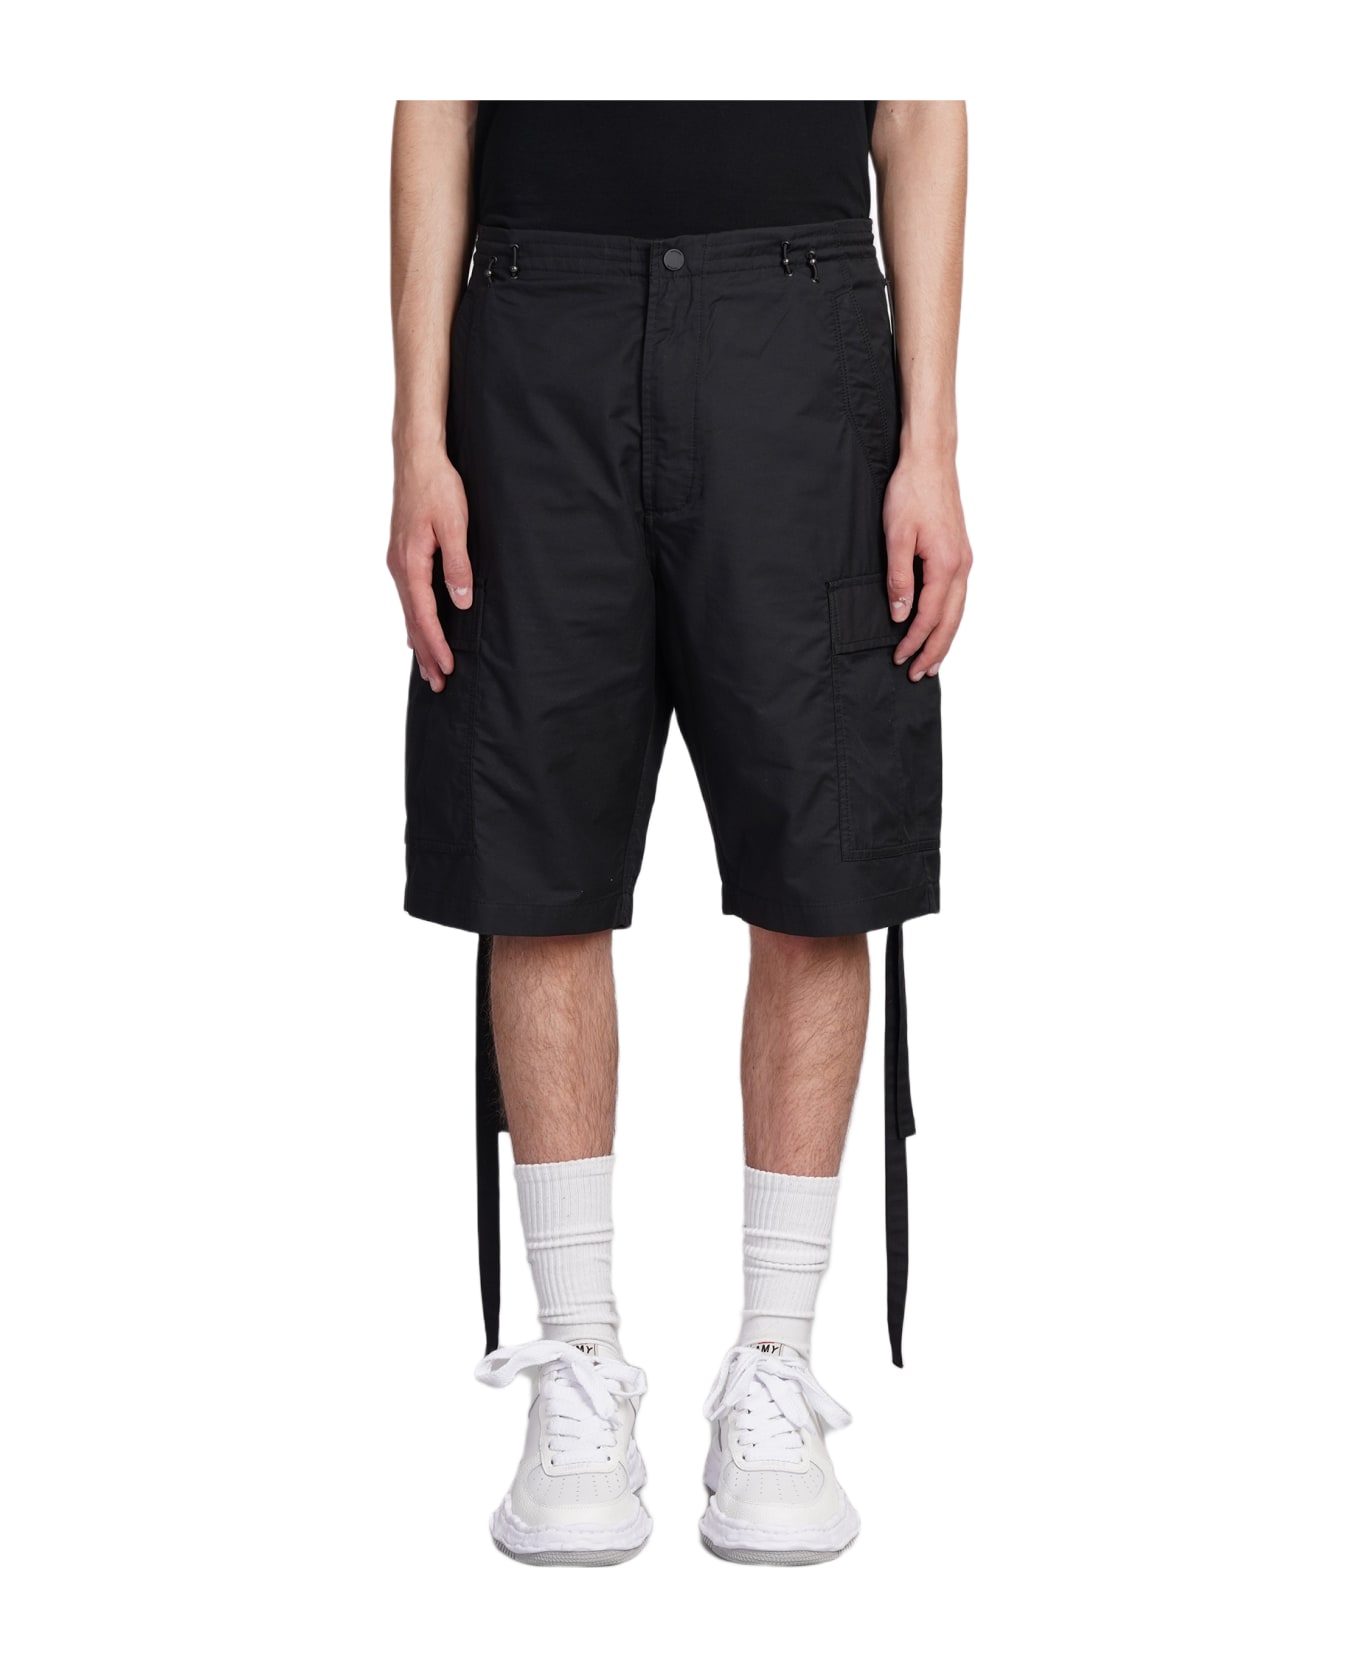 Maharishi Shorts In Black Cotton - black ショートパンツ